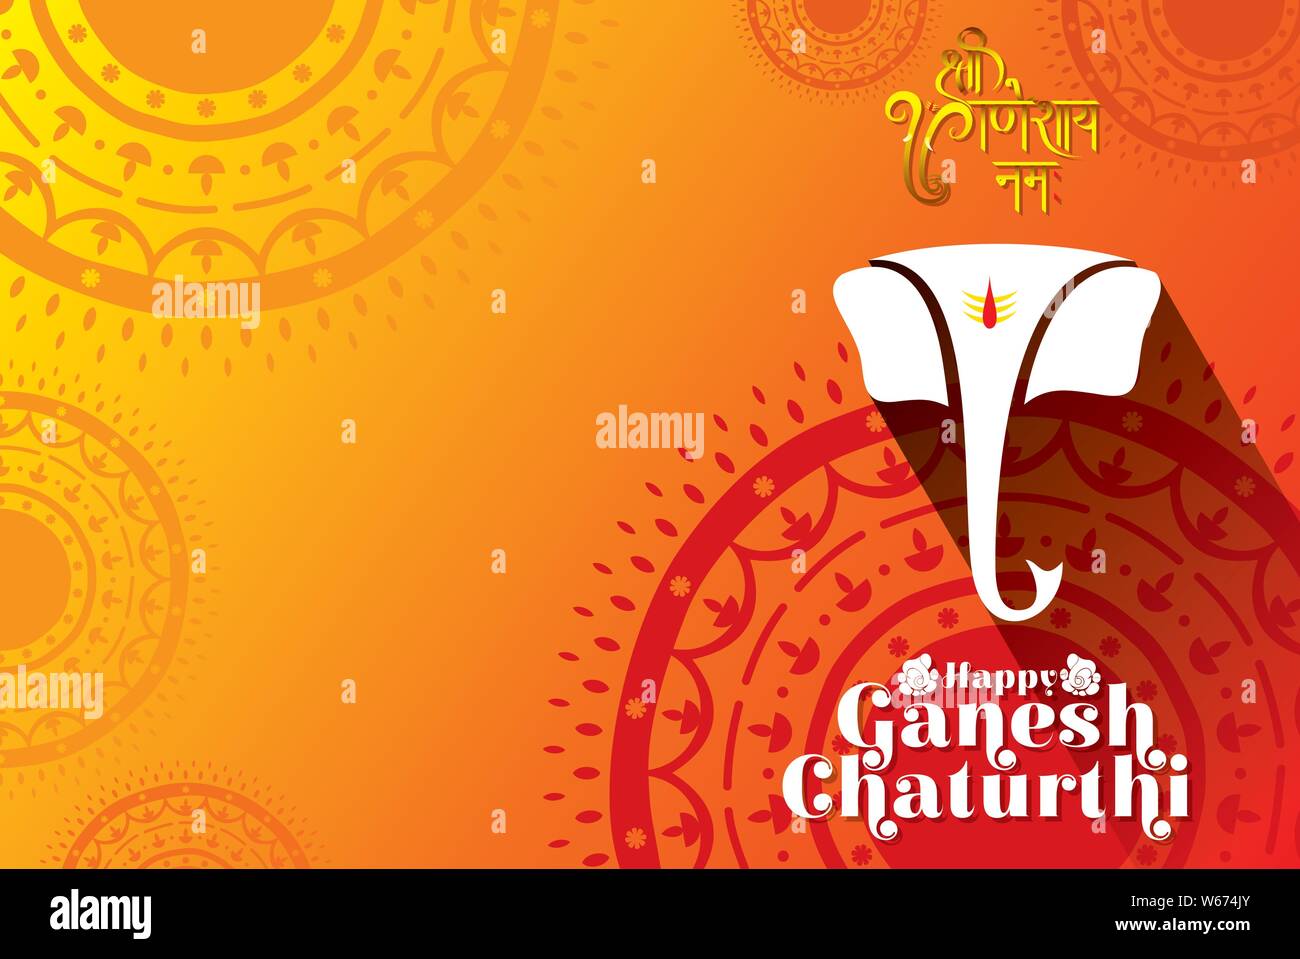 Lễ hội Lord Ganpati/Ganesh Chaturthi là một sự kiện vô cùng tuyệt vời và khiến mọi người hăng say cảm nhận sự hiện diện của vị thần Ganesha. Hãy xem bức tranh nghệ thuật này để tận hưởng không khí lễ hội và thần linh đầy sức sống.